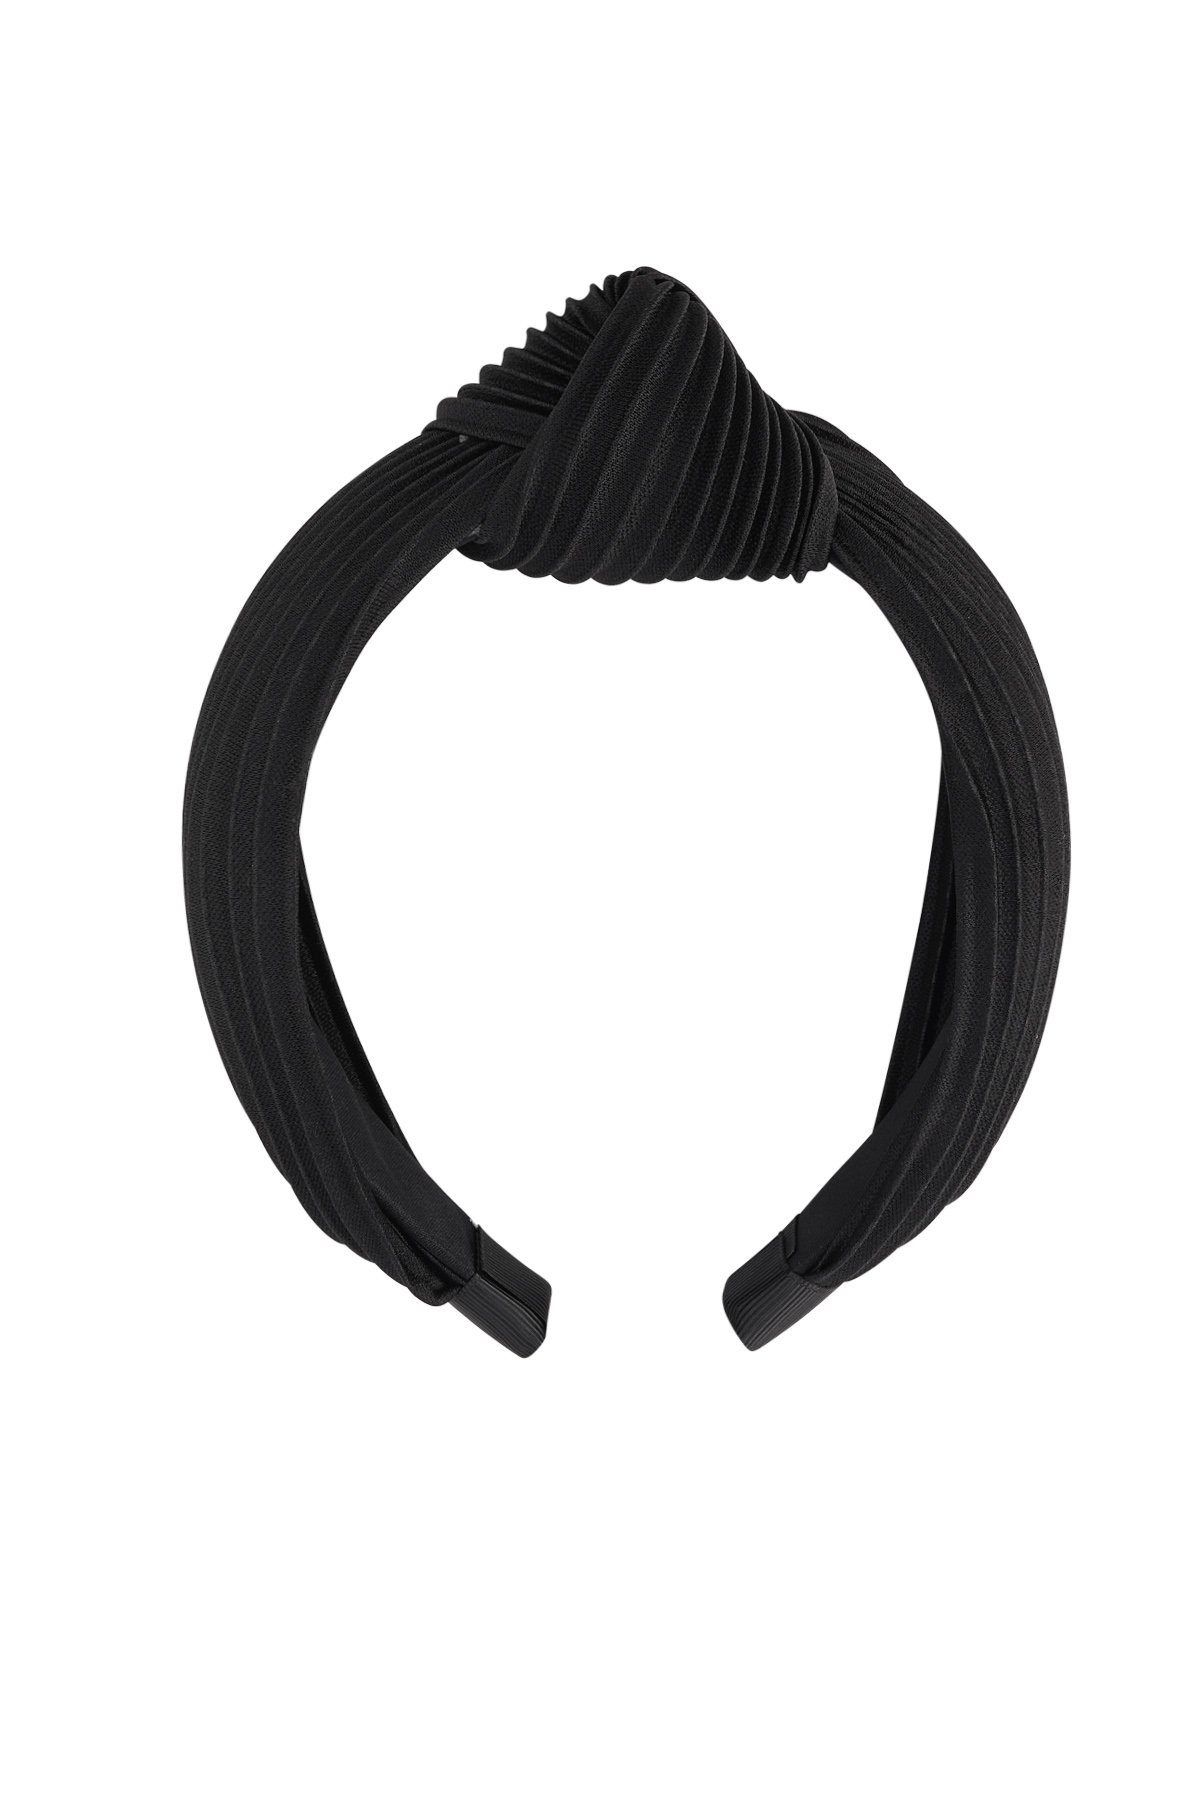 Düğümlü saç bandı nervürü - siyah Plastik h5 